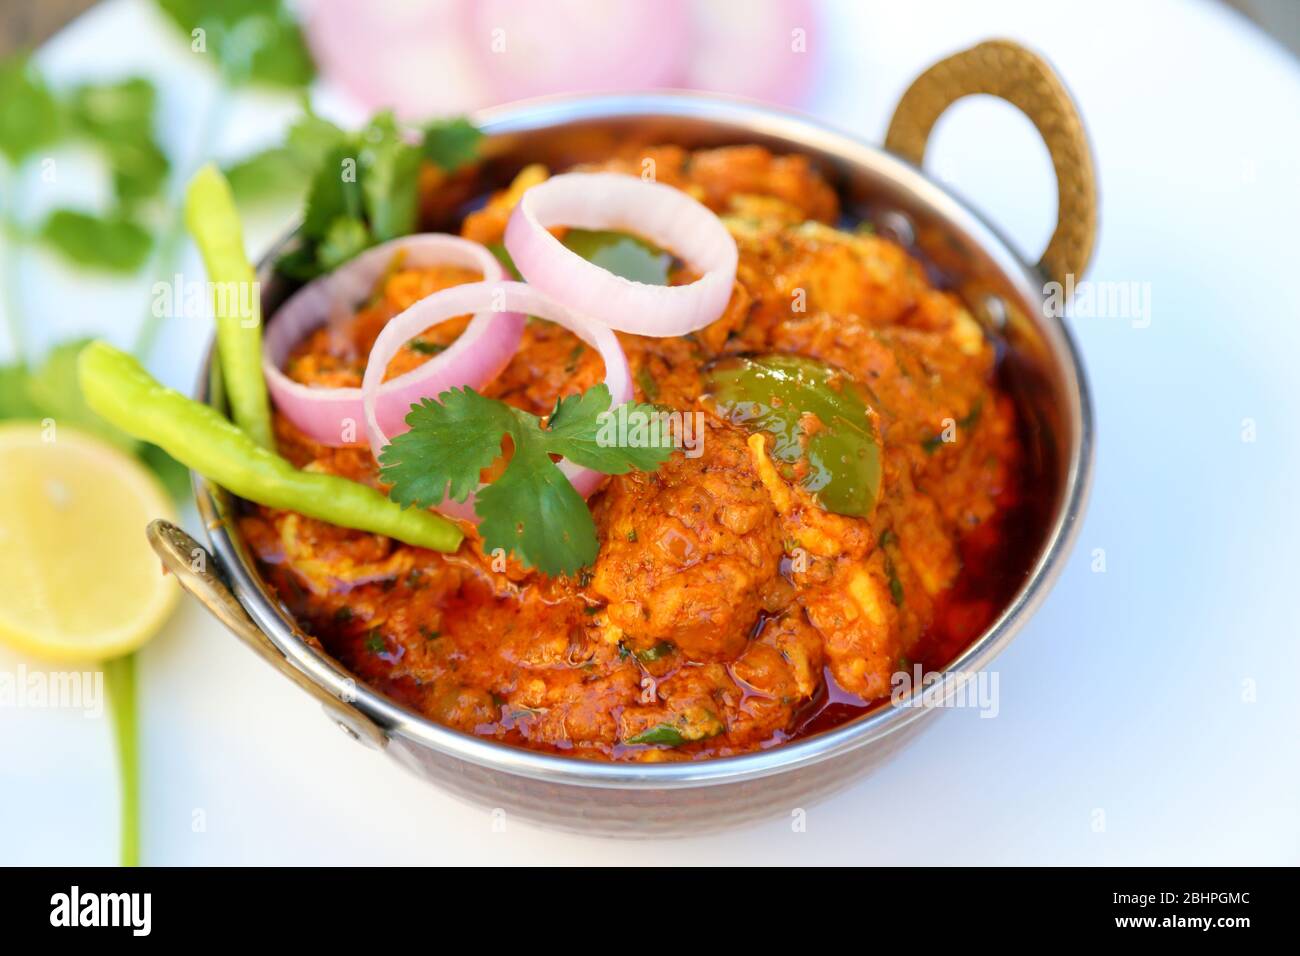 HÜTTENKÄSE IM INDISCHEN STIL VEGETARISCHES CURRY GERICHT. Kadai Paneer – traditionelle indische oder punjabi-Küche. Garniert mit Zwiebel- und Chilischeiben. Stockfoto